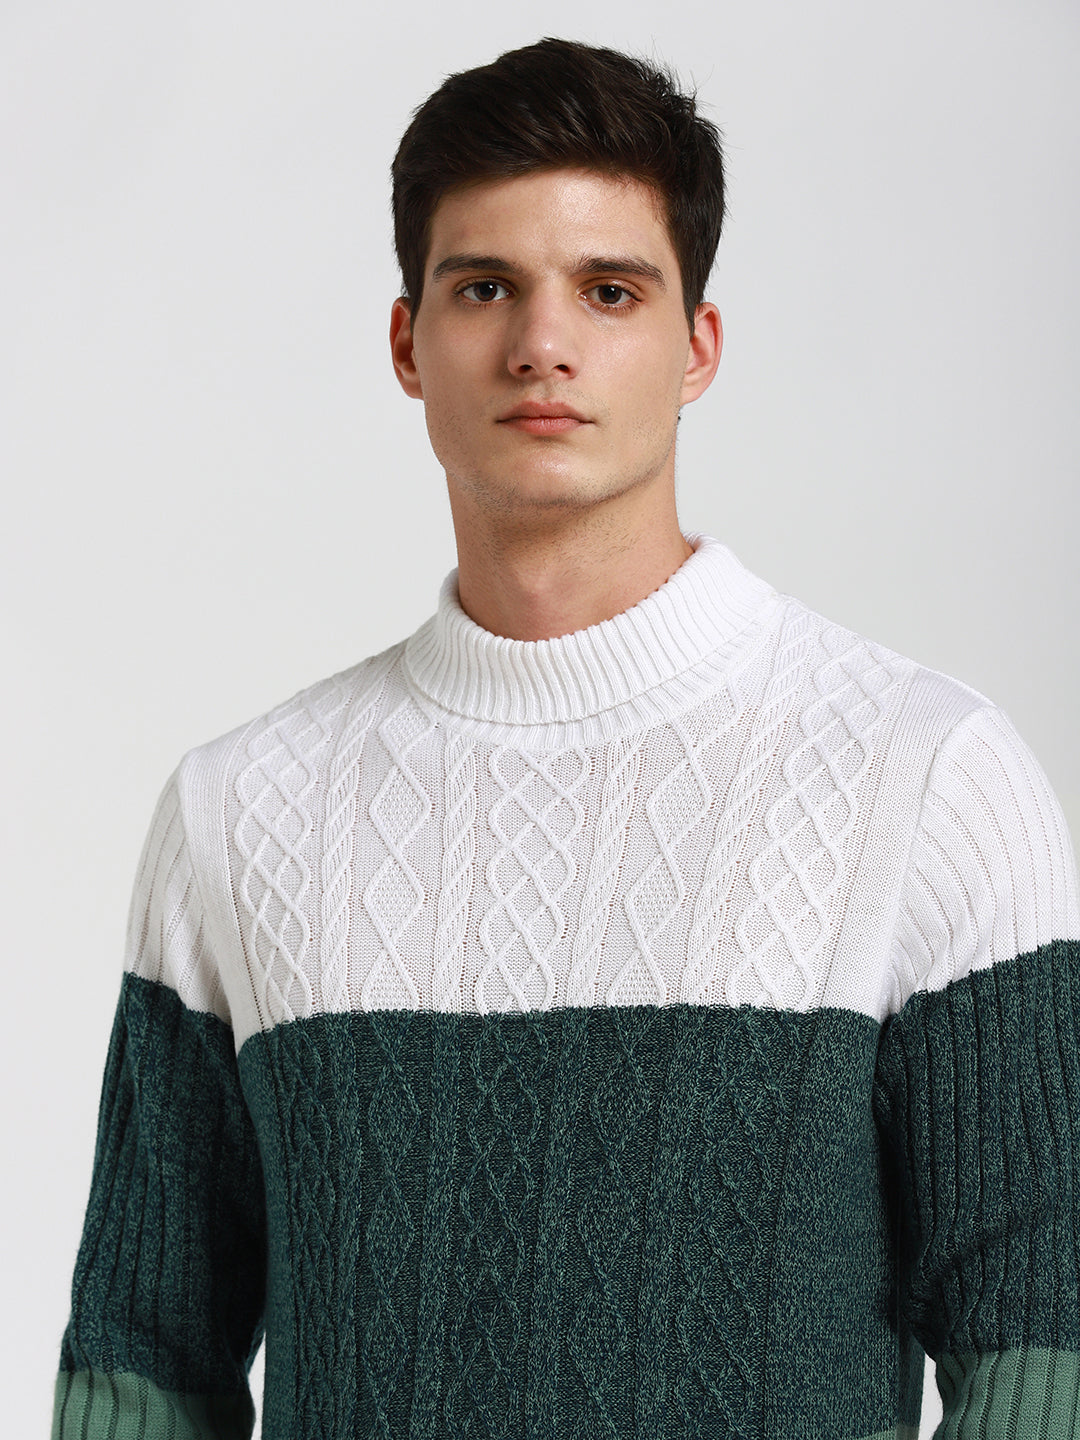 Dennis Lingo Men's Off White Colourblock  Full Sleeves Pullover Sweater